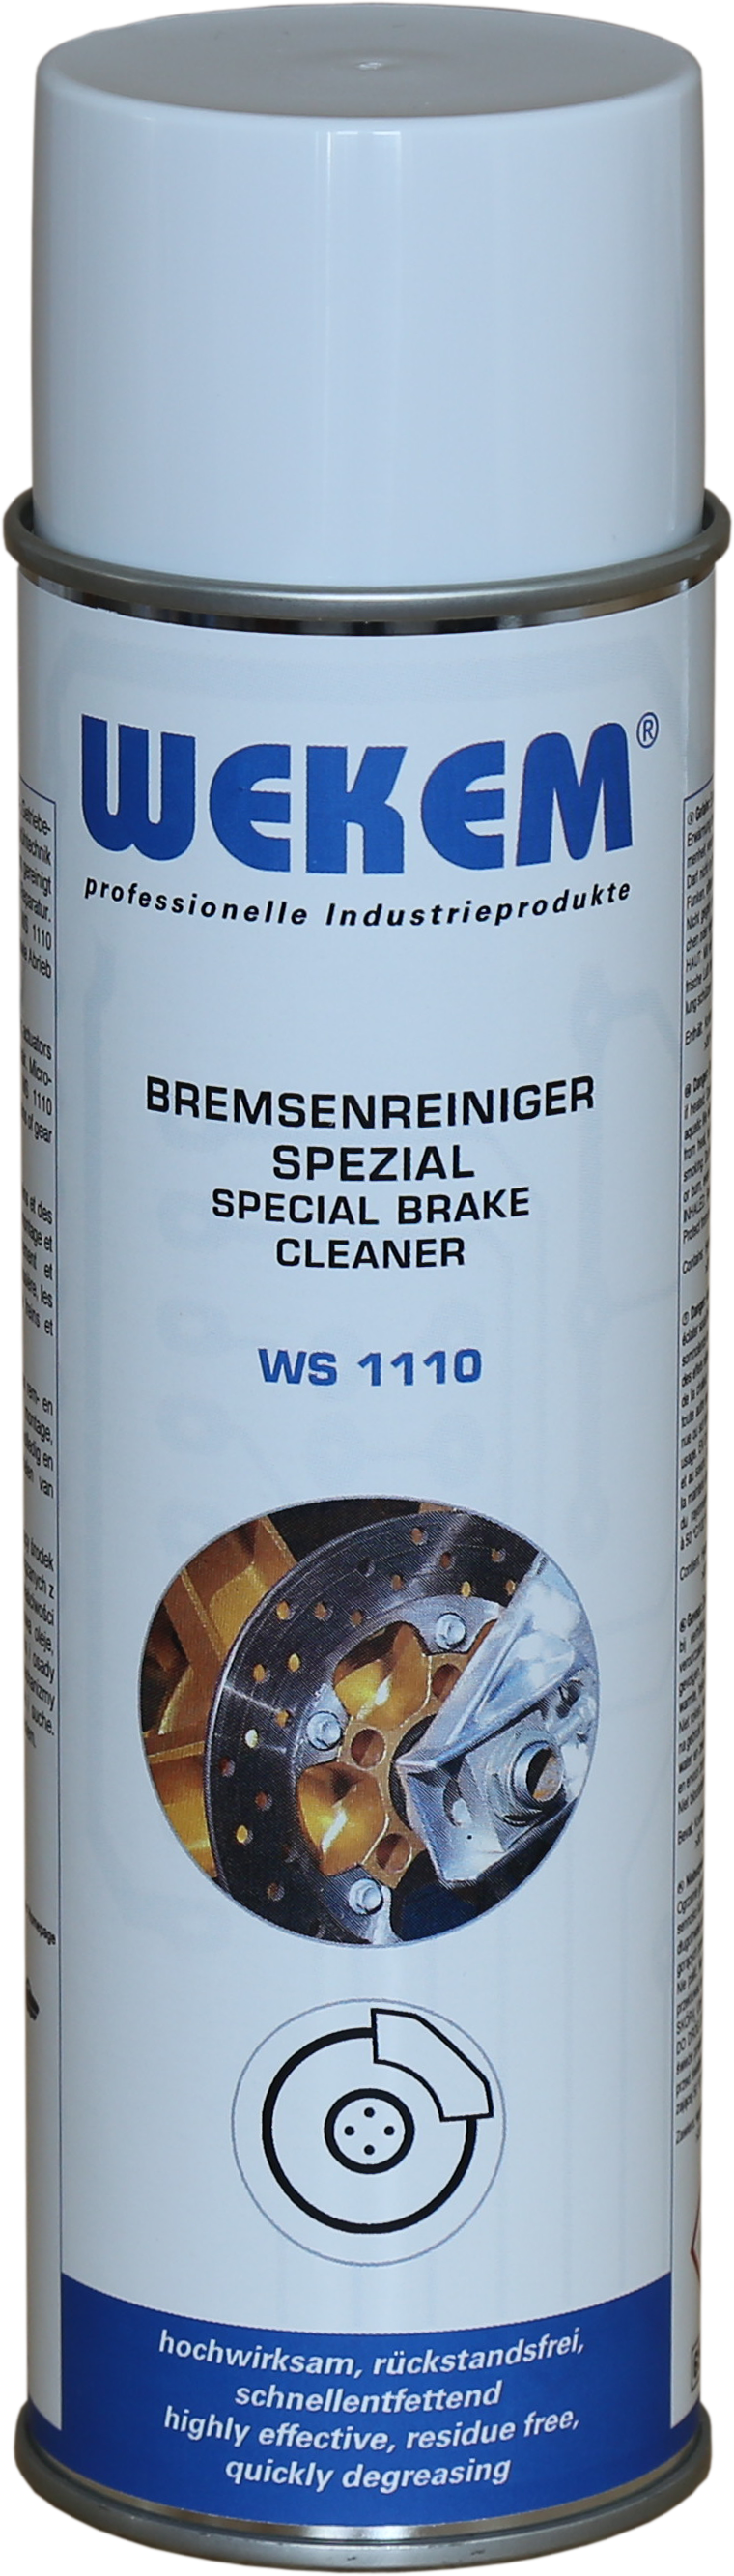 Bremsenreiniger Spezial WS 1110